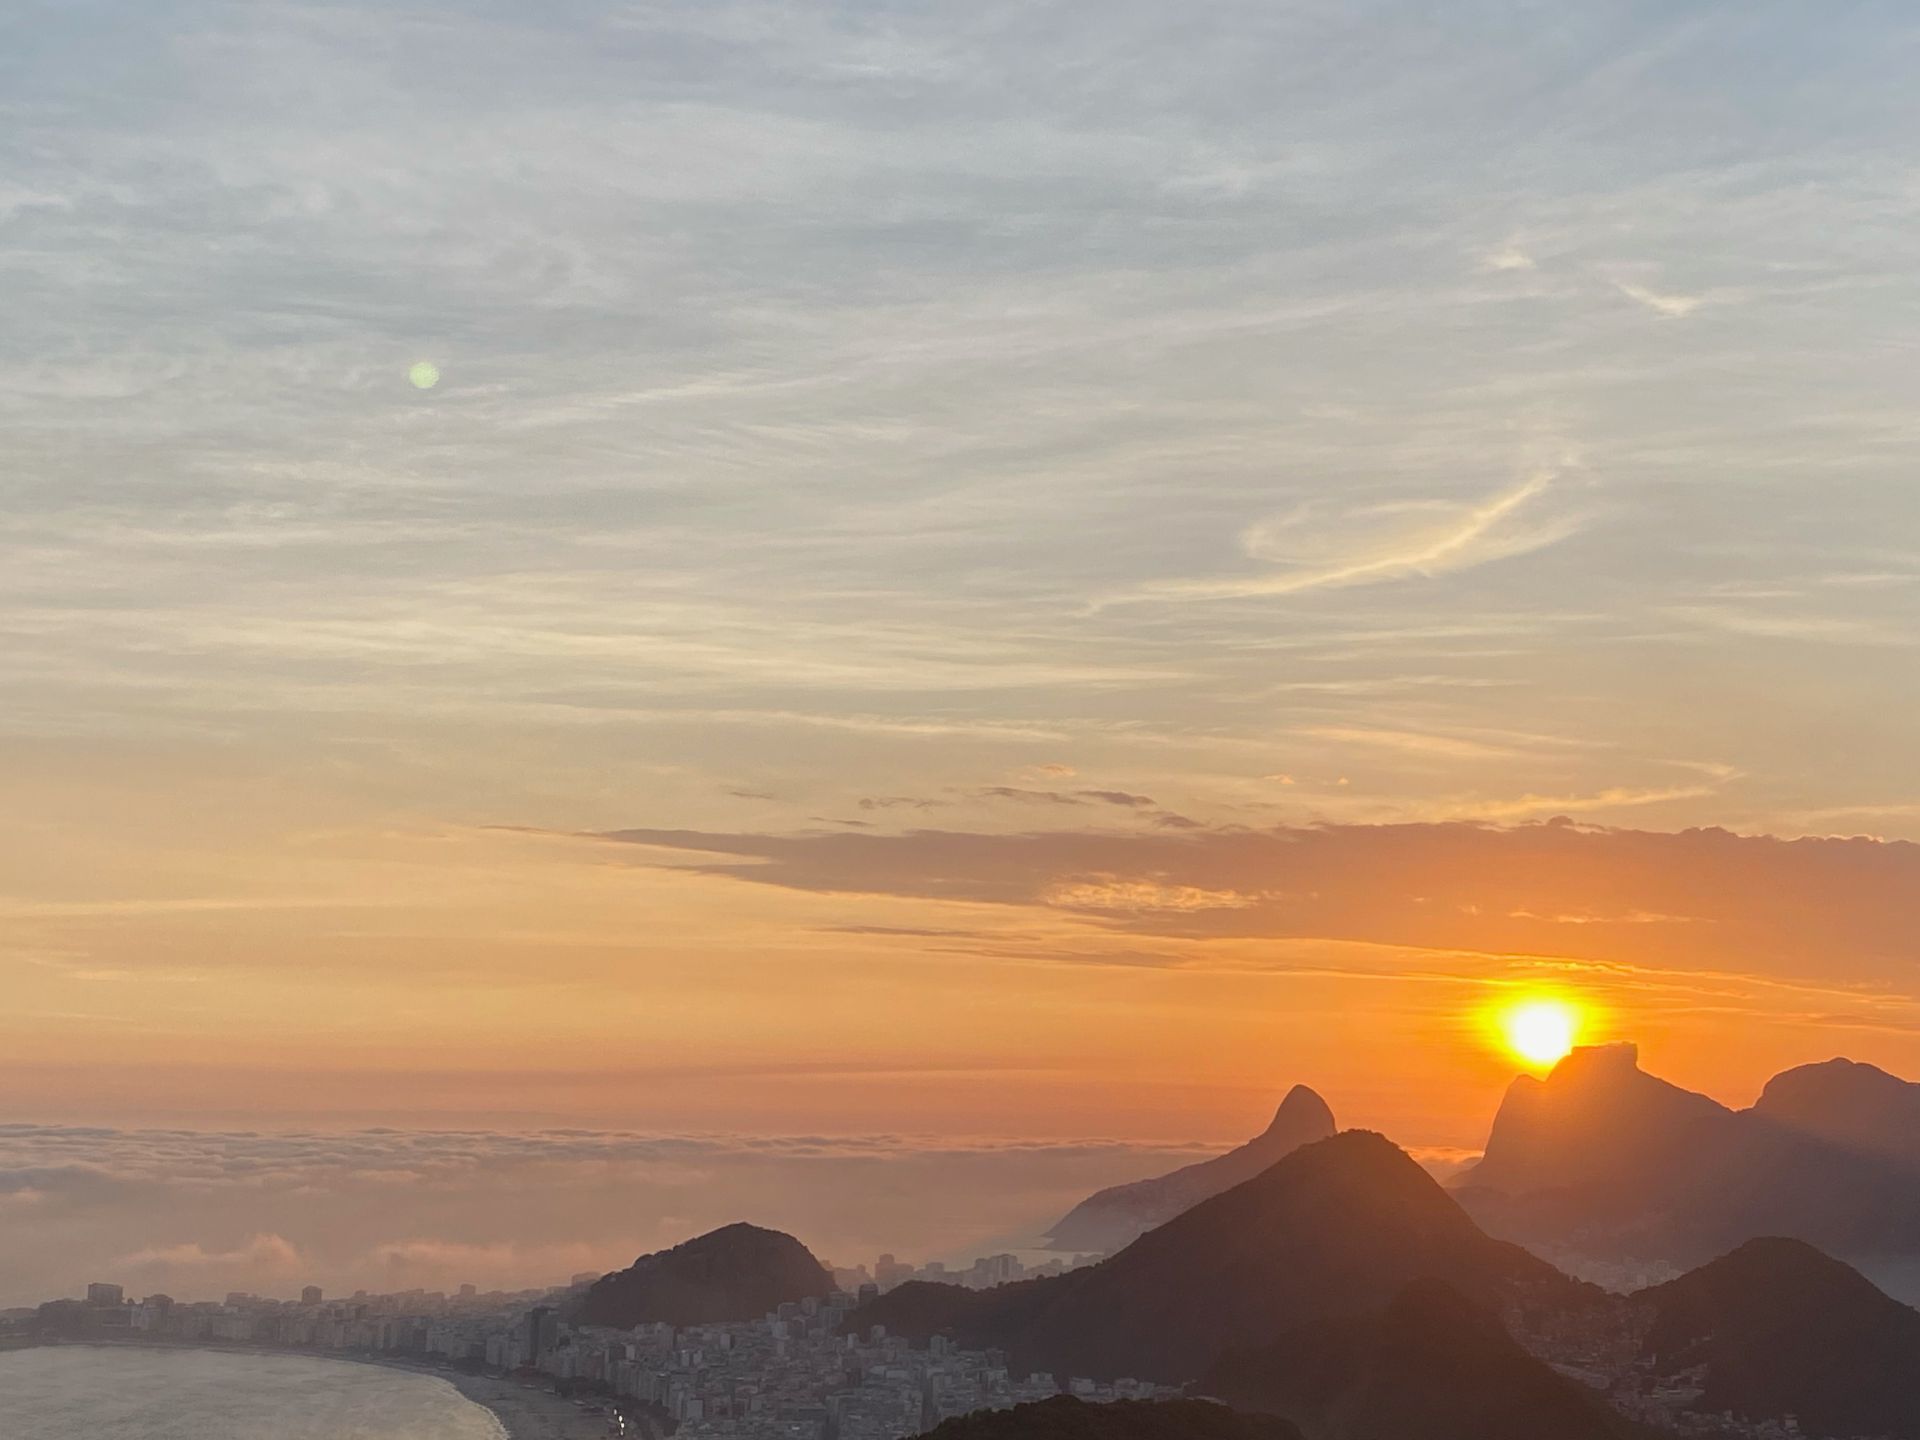 A beautiful view of Rio de Janeiro, Brazil